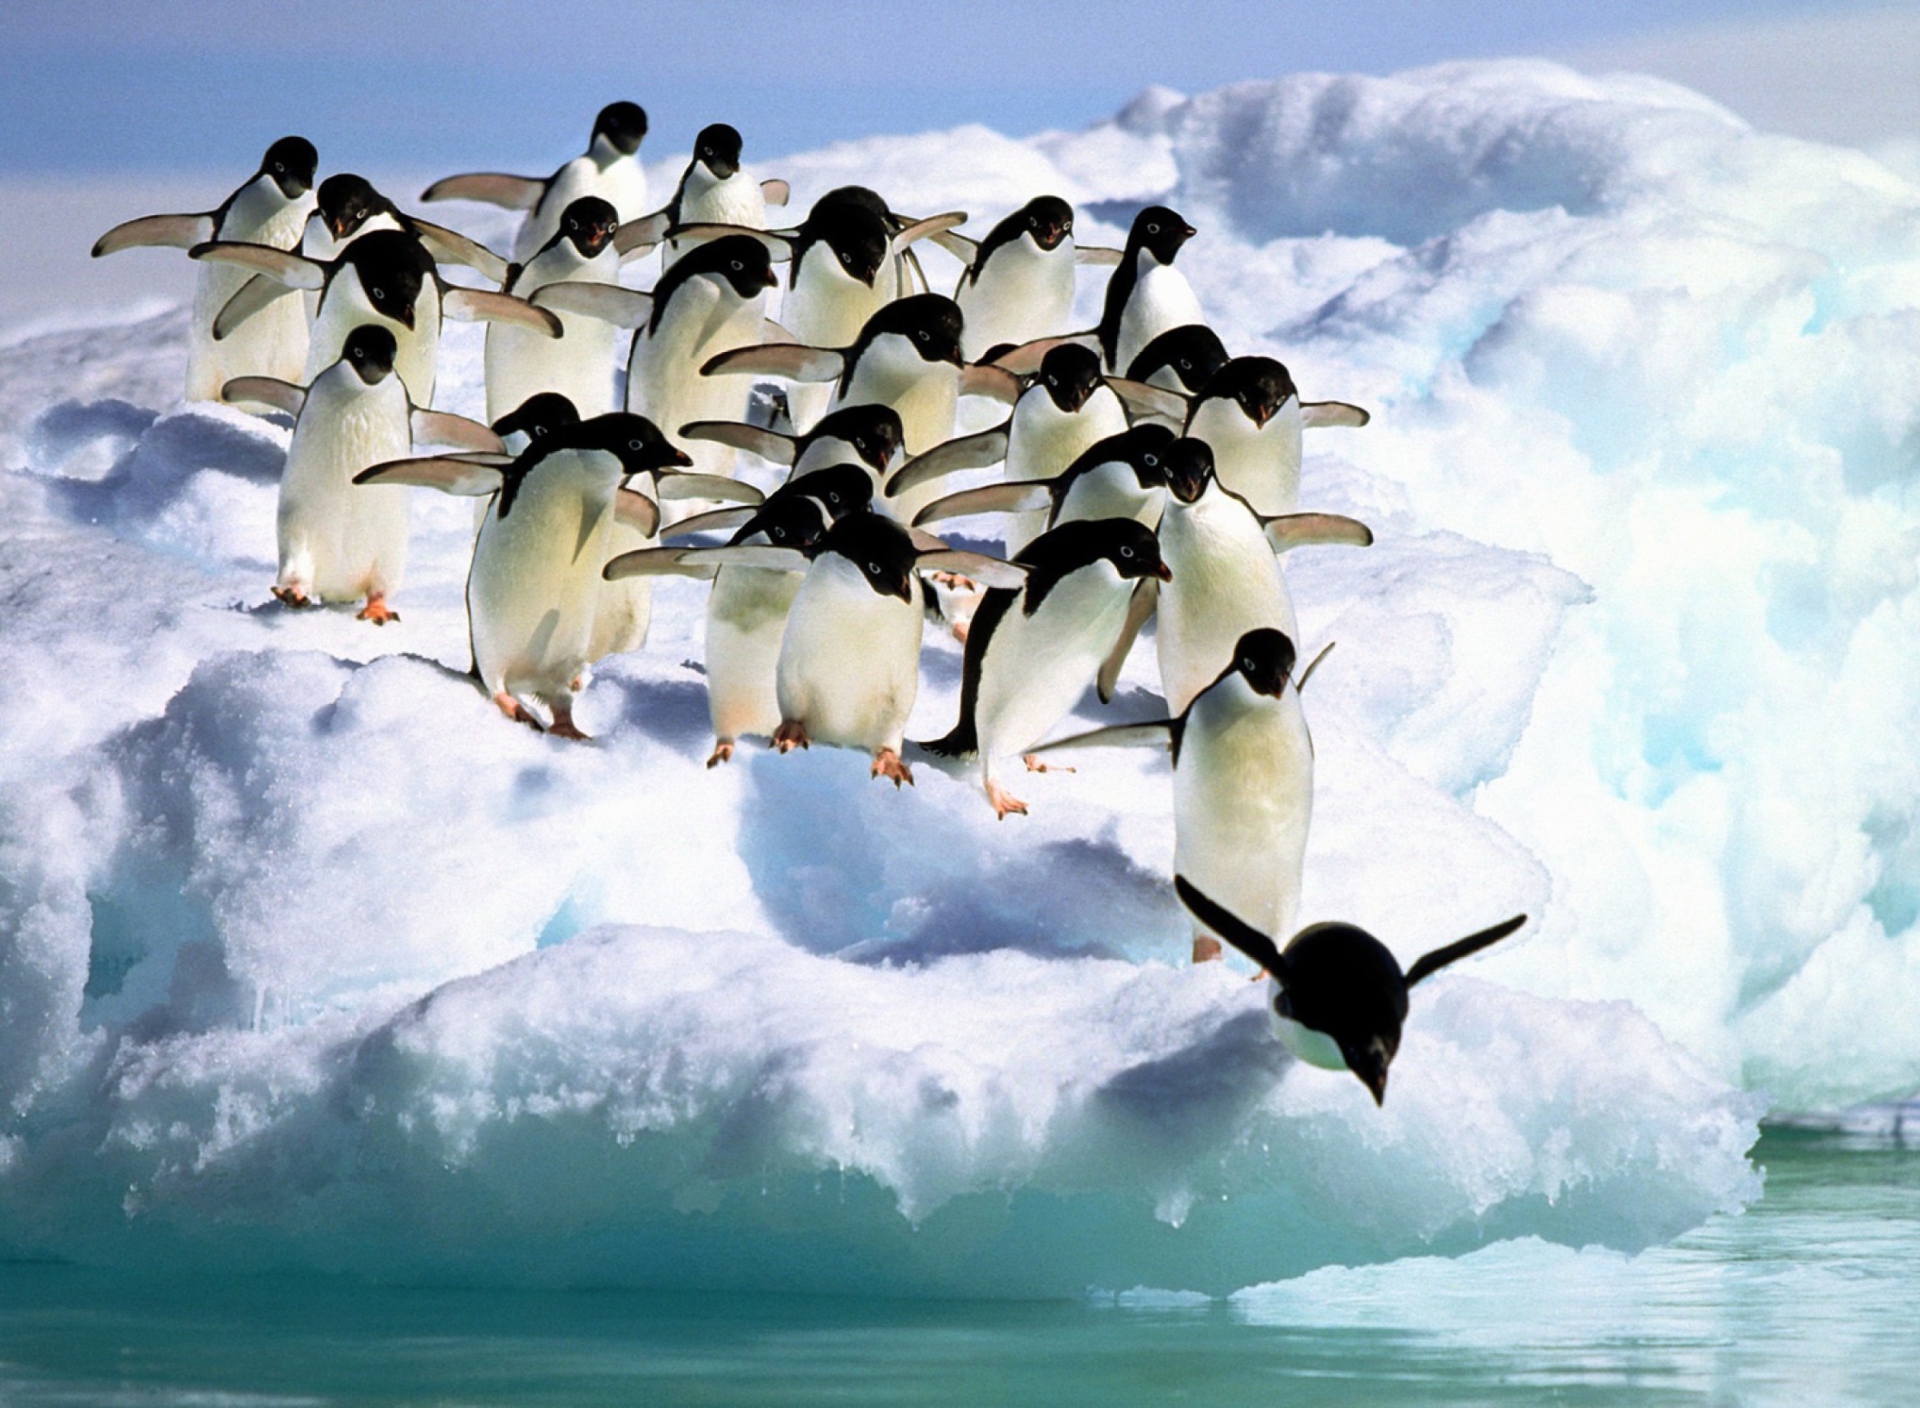 Penguins On An Iceberg wallpaper 1920x1408